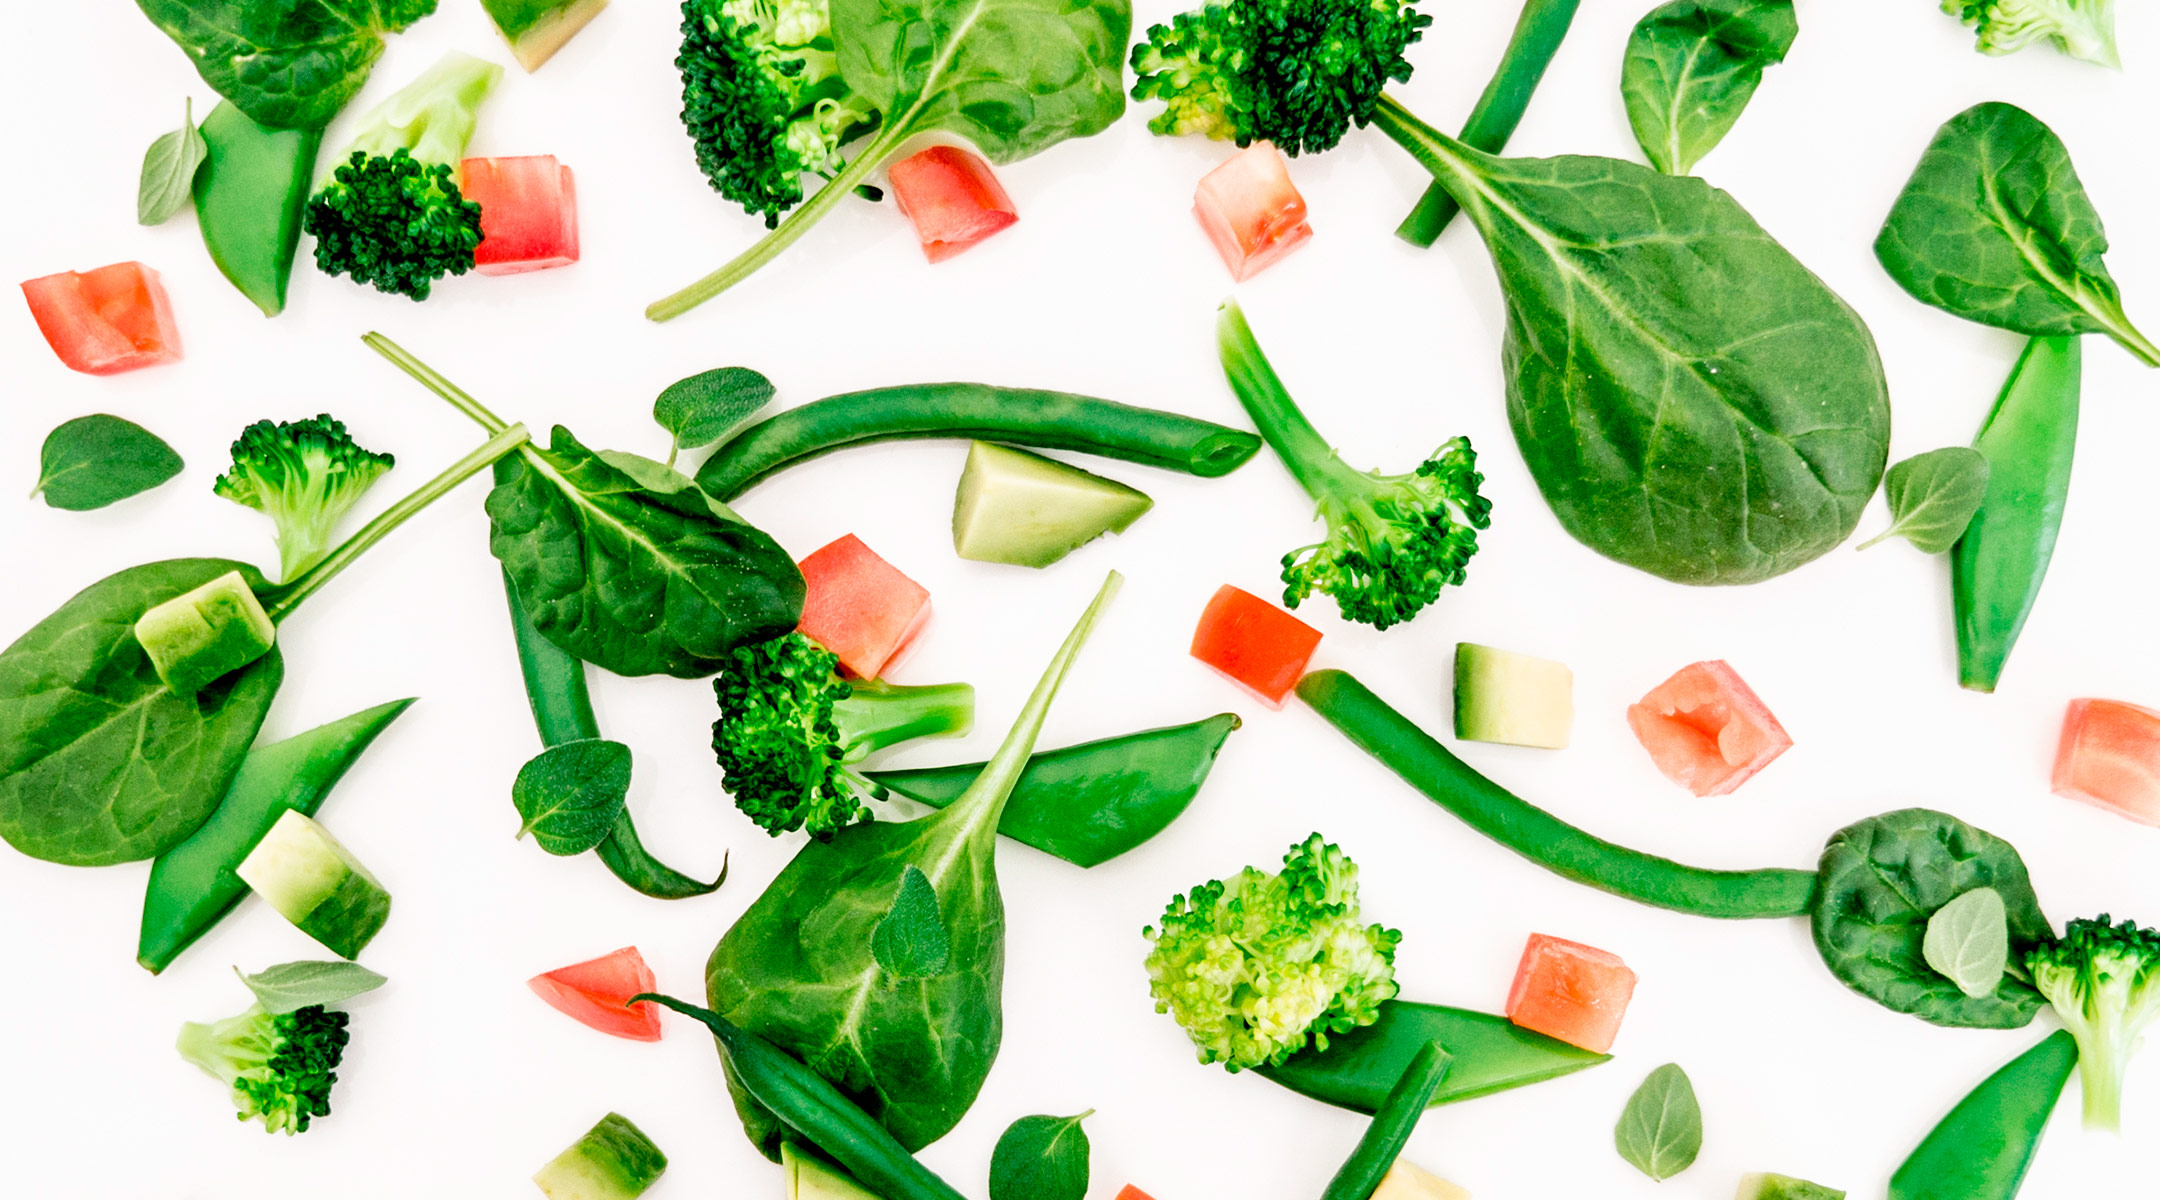 healthy food ingredients, vegetables and fruit